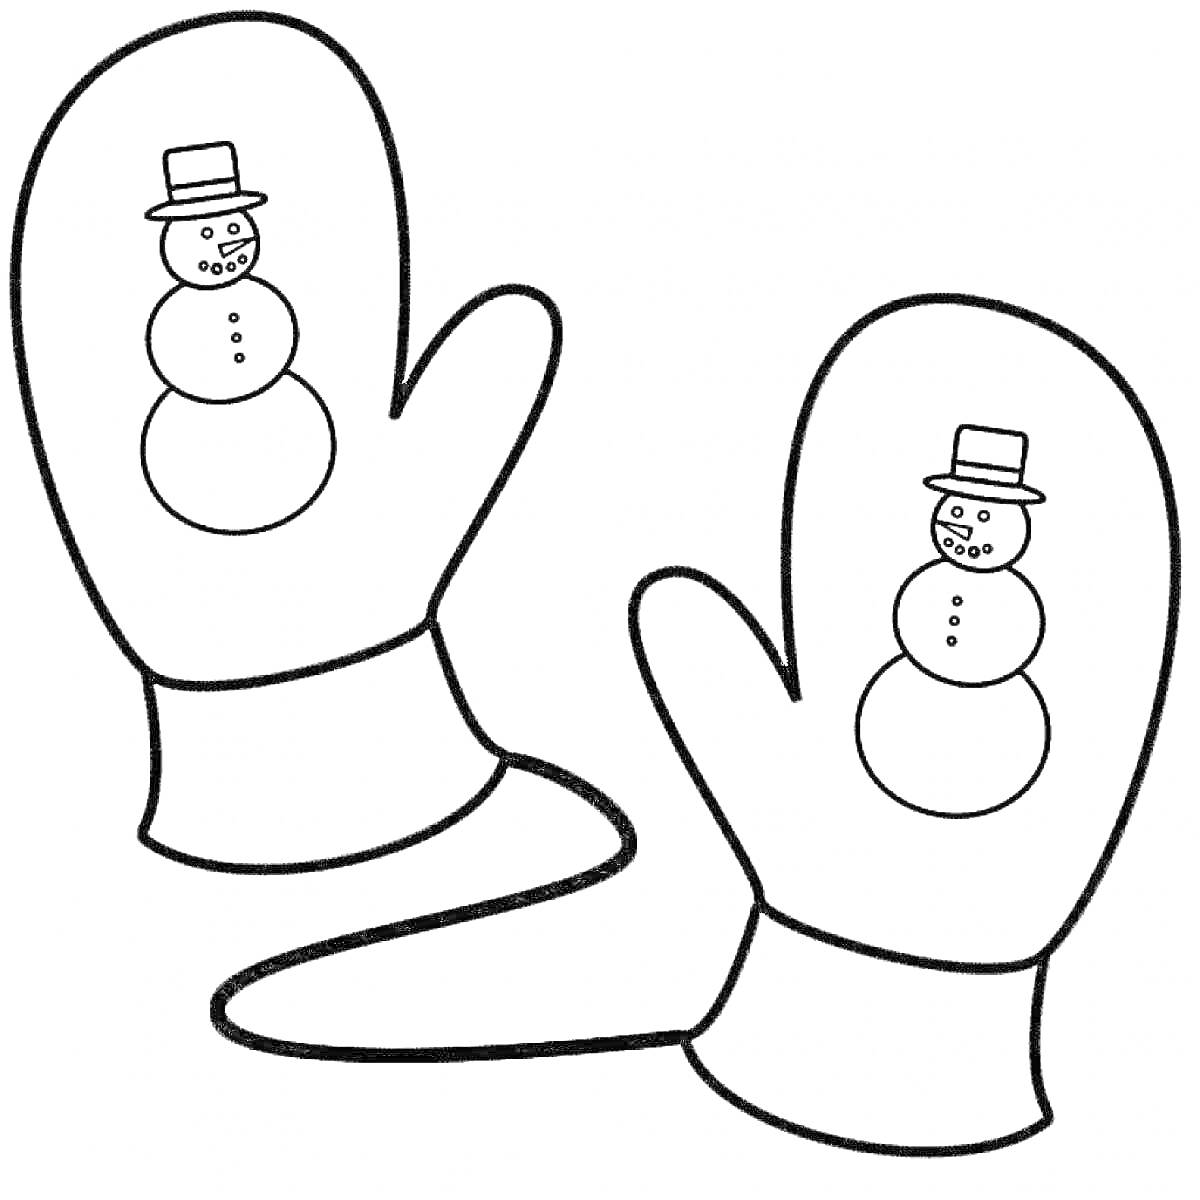 Варежки с рисунком снеговика, связанные шнурком